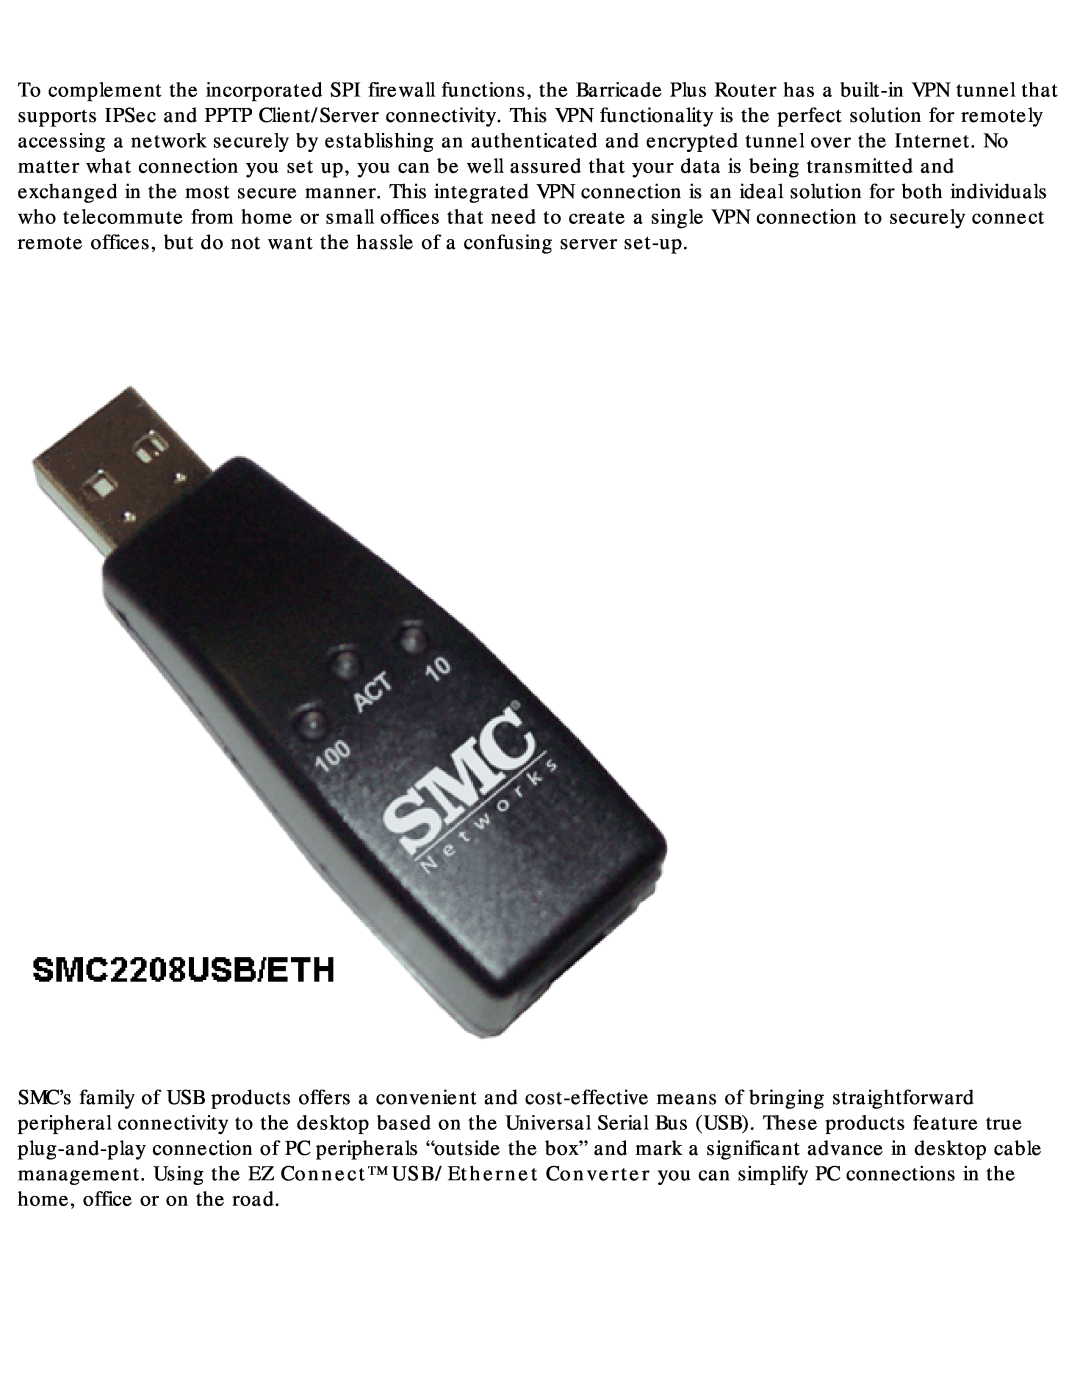 SMC Networks SMC2655W warranty 